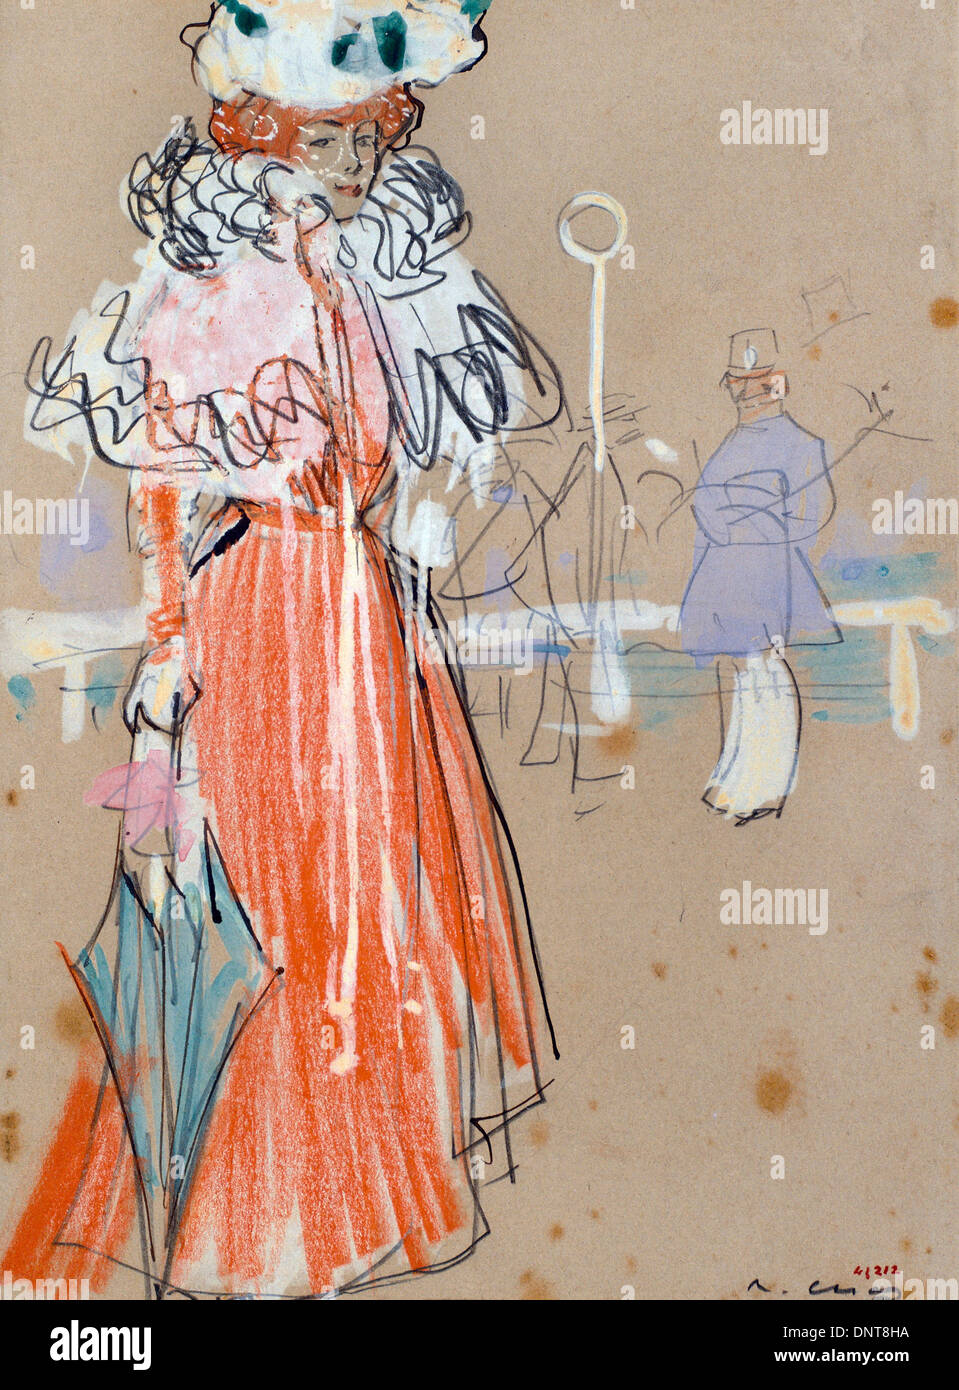 Ramon Casas i Carbo, femme figure en rouge. Vers 1900. Gouache, crayon de graphite sur papier. Banque D'Images